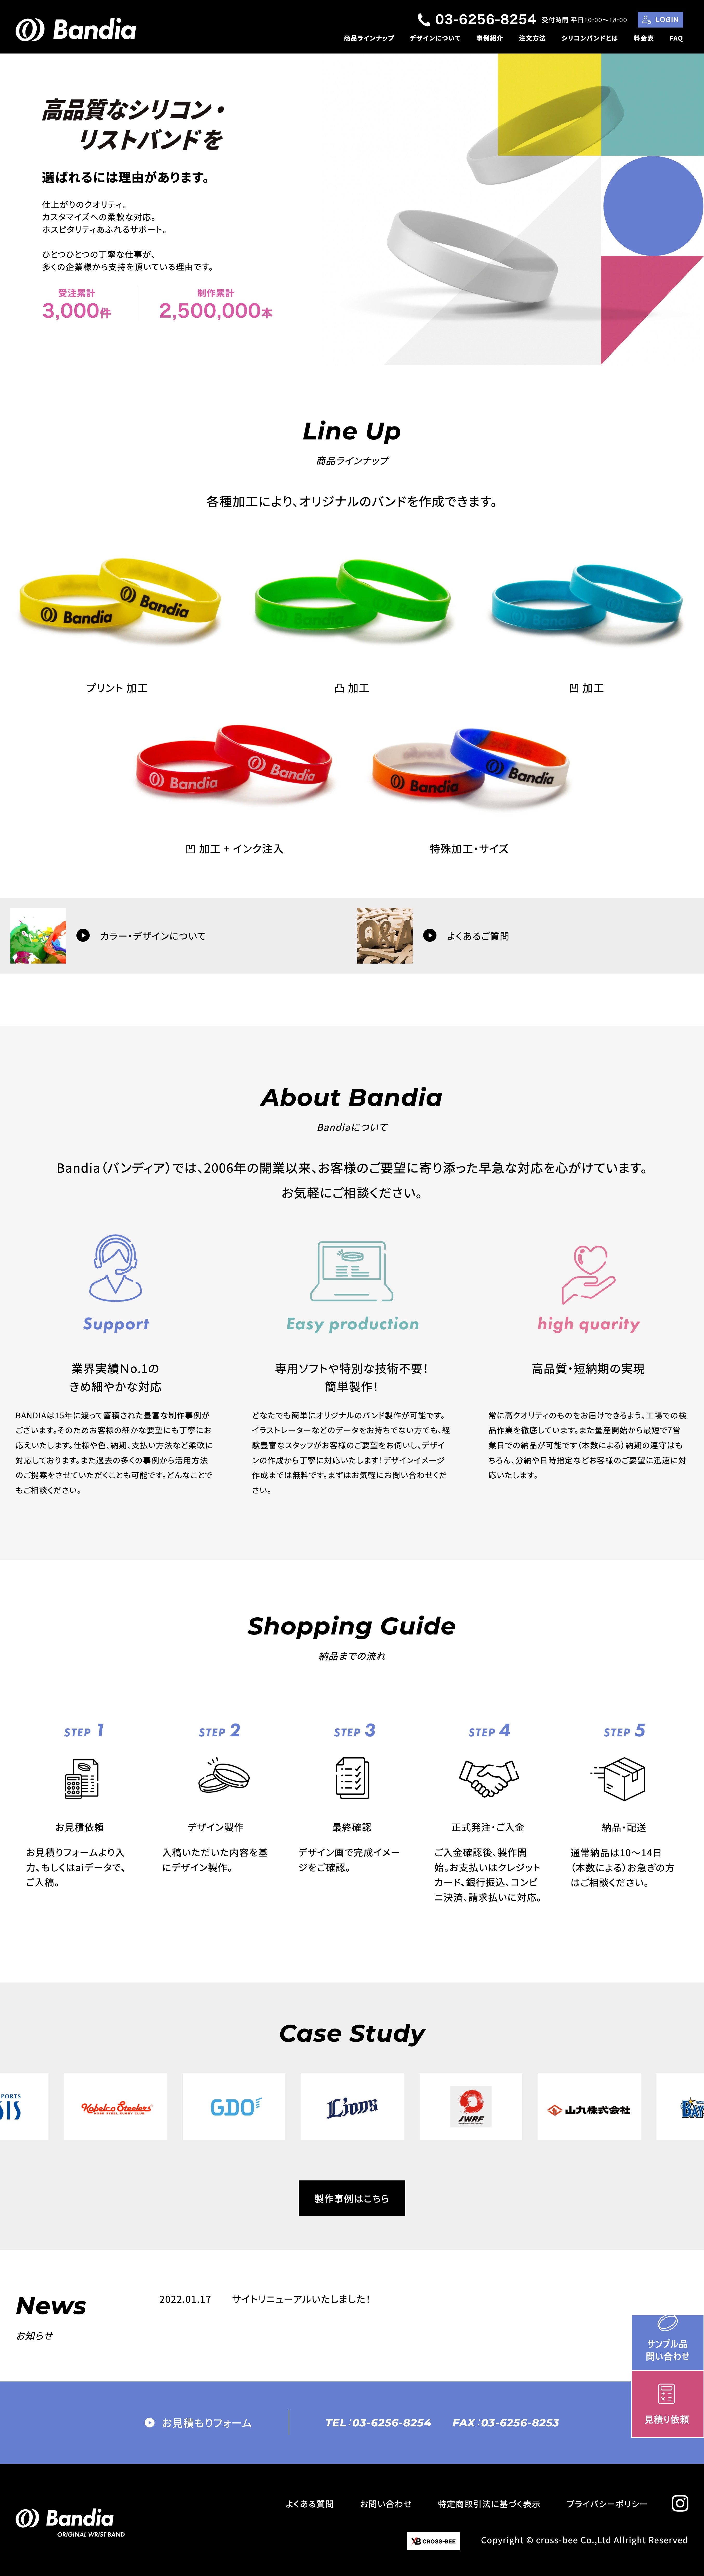 「Bandia」シリコンバンド製作サイトの構築